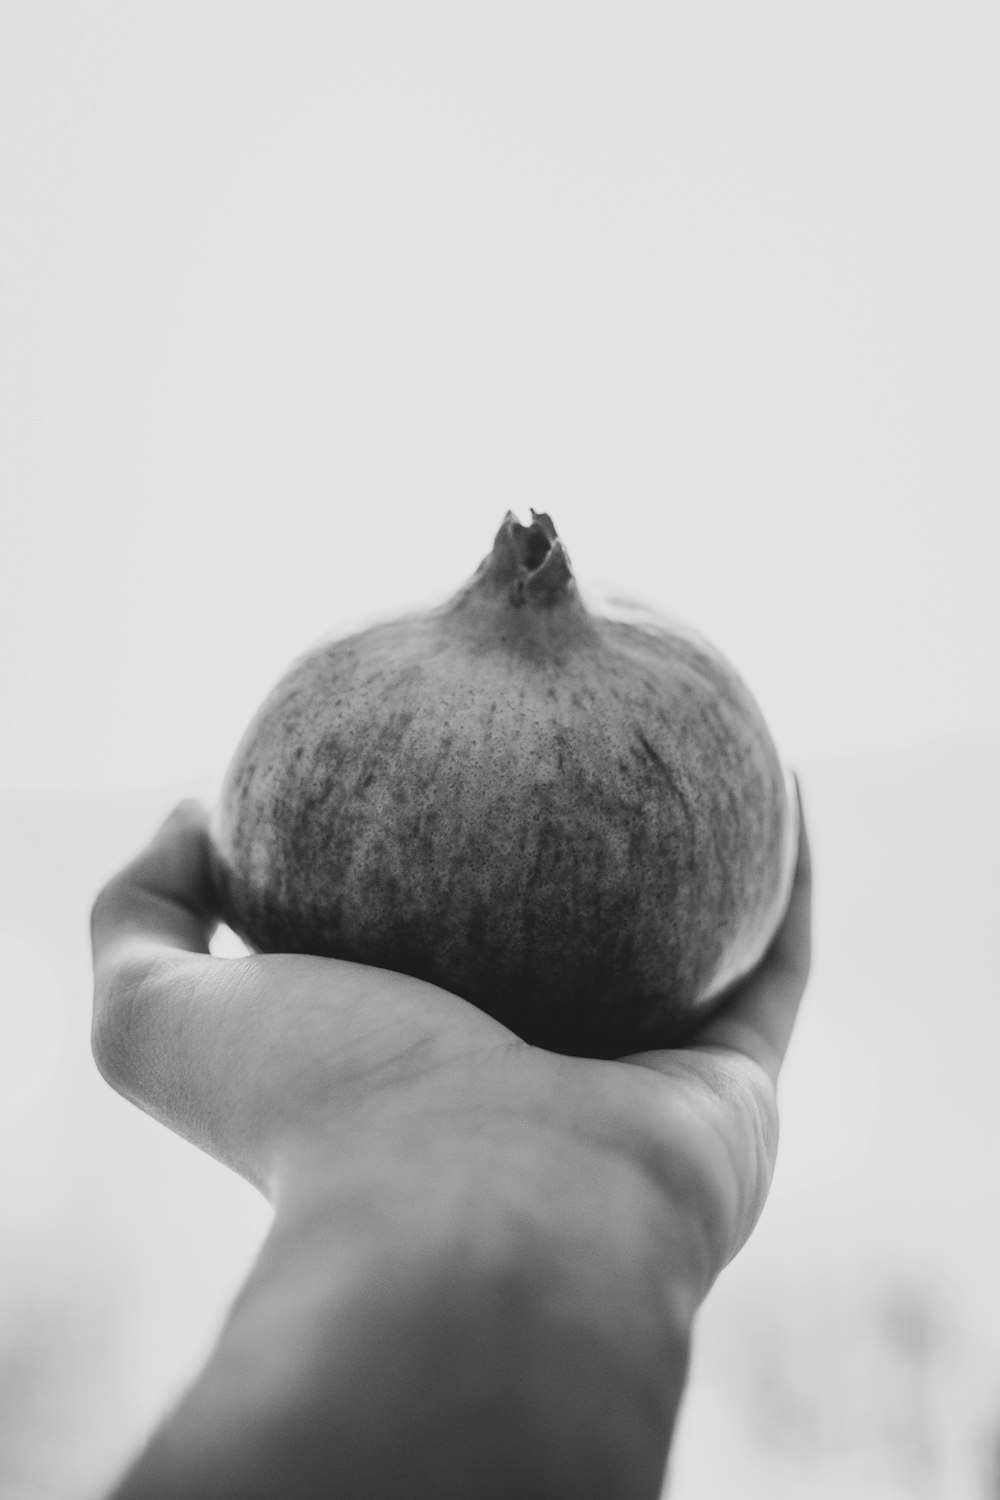 Photo en niveaux de gris d’une personne tenant un fruit rond